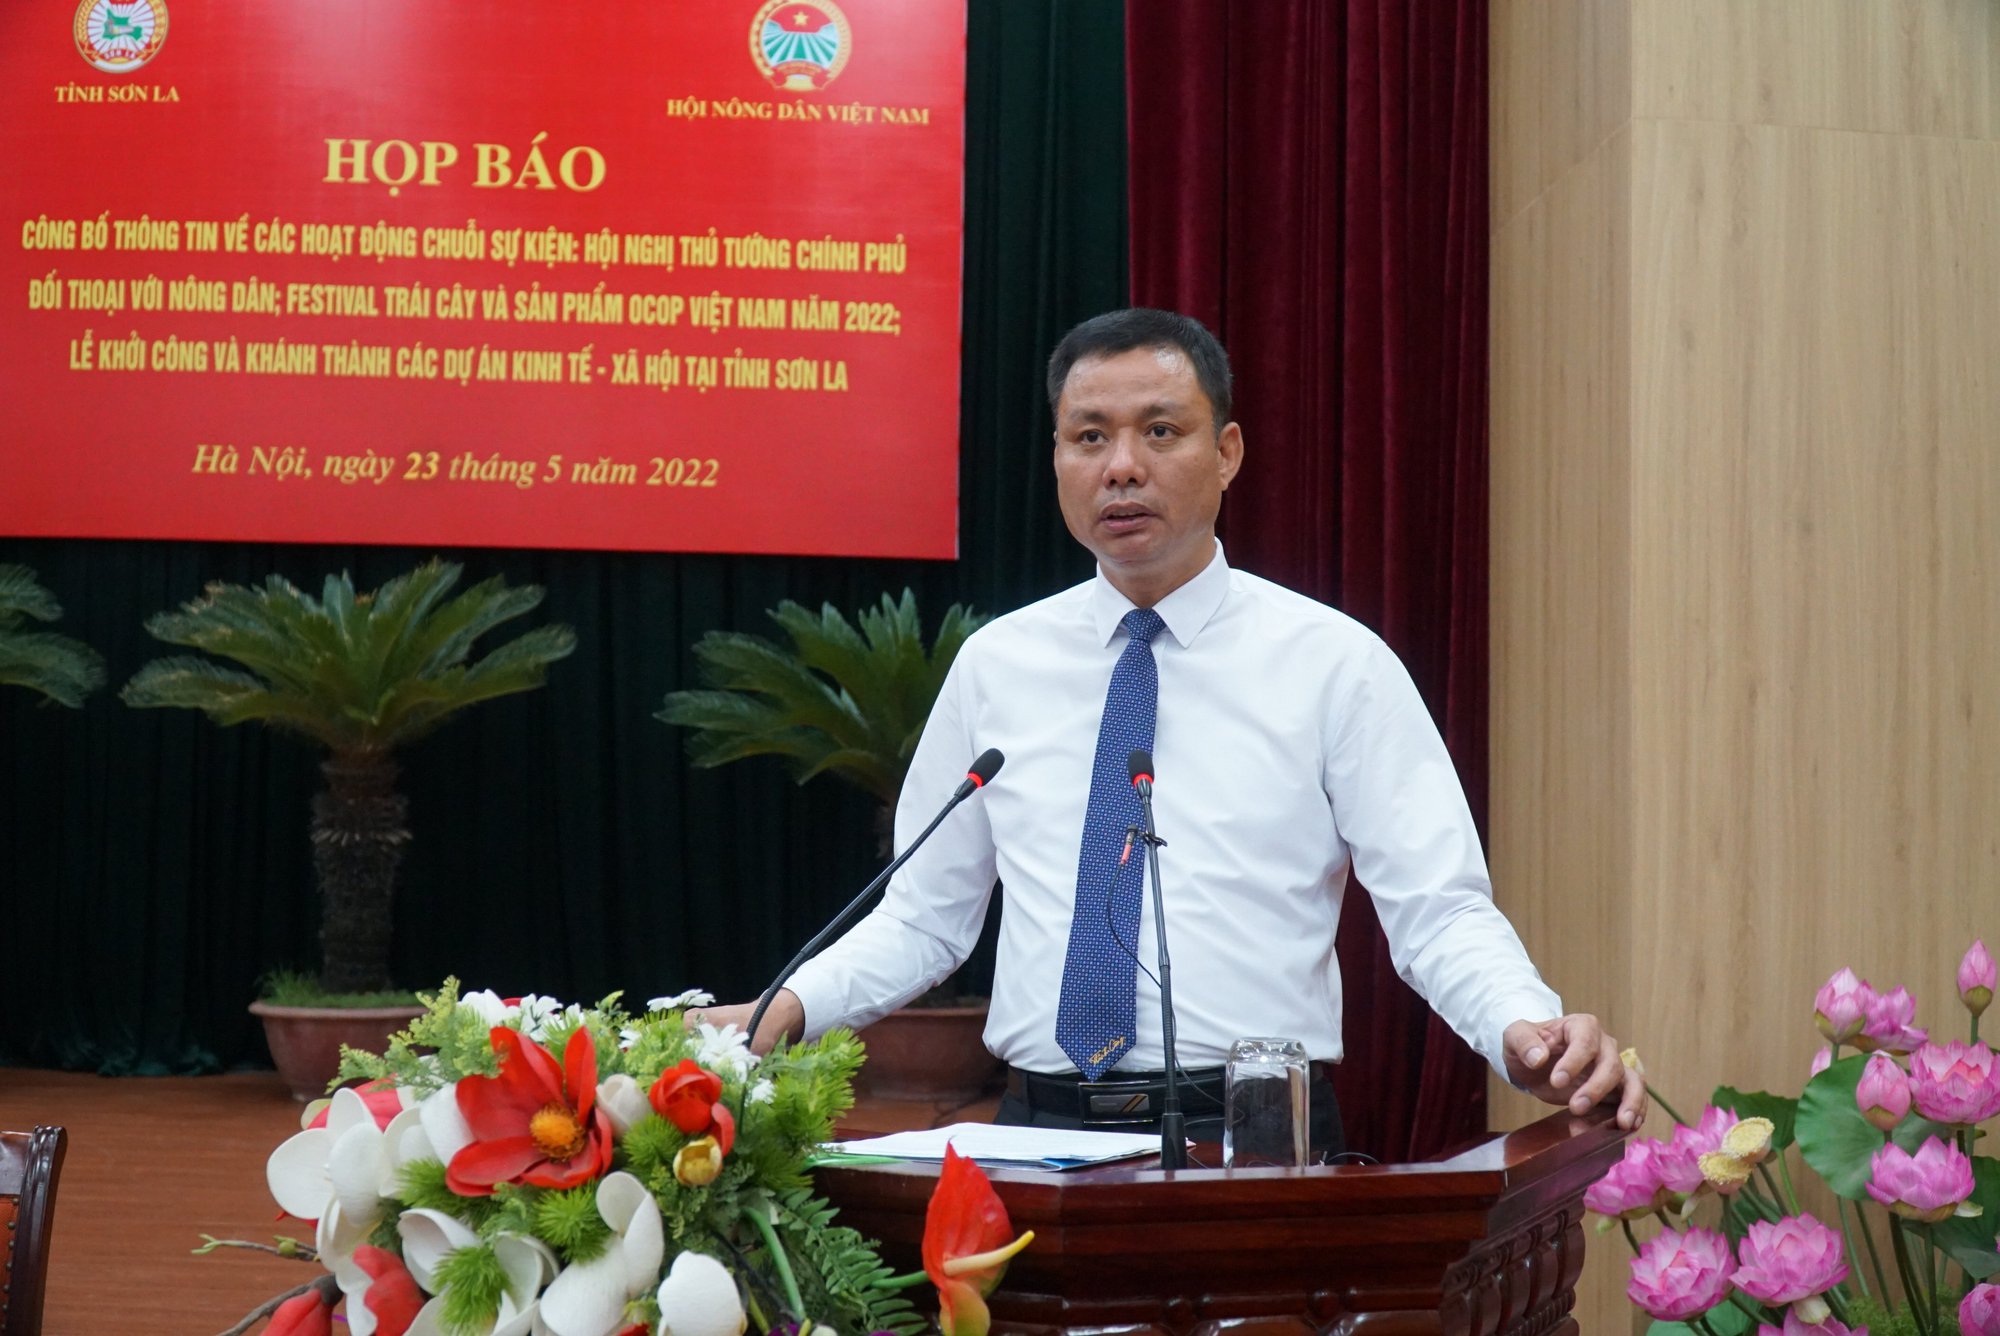 Họp báo công bố chuỗi sự kiện Hội nghị Thủ tướng Chính phủ đối thoại với nông dân, Festival trái cây Việt Nam - Ảnh 6.